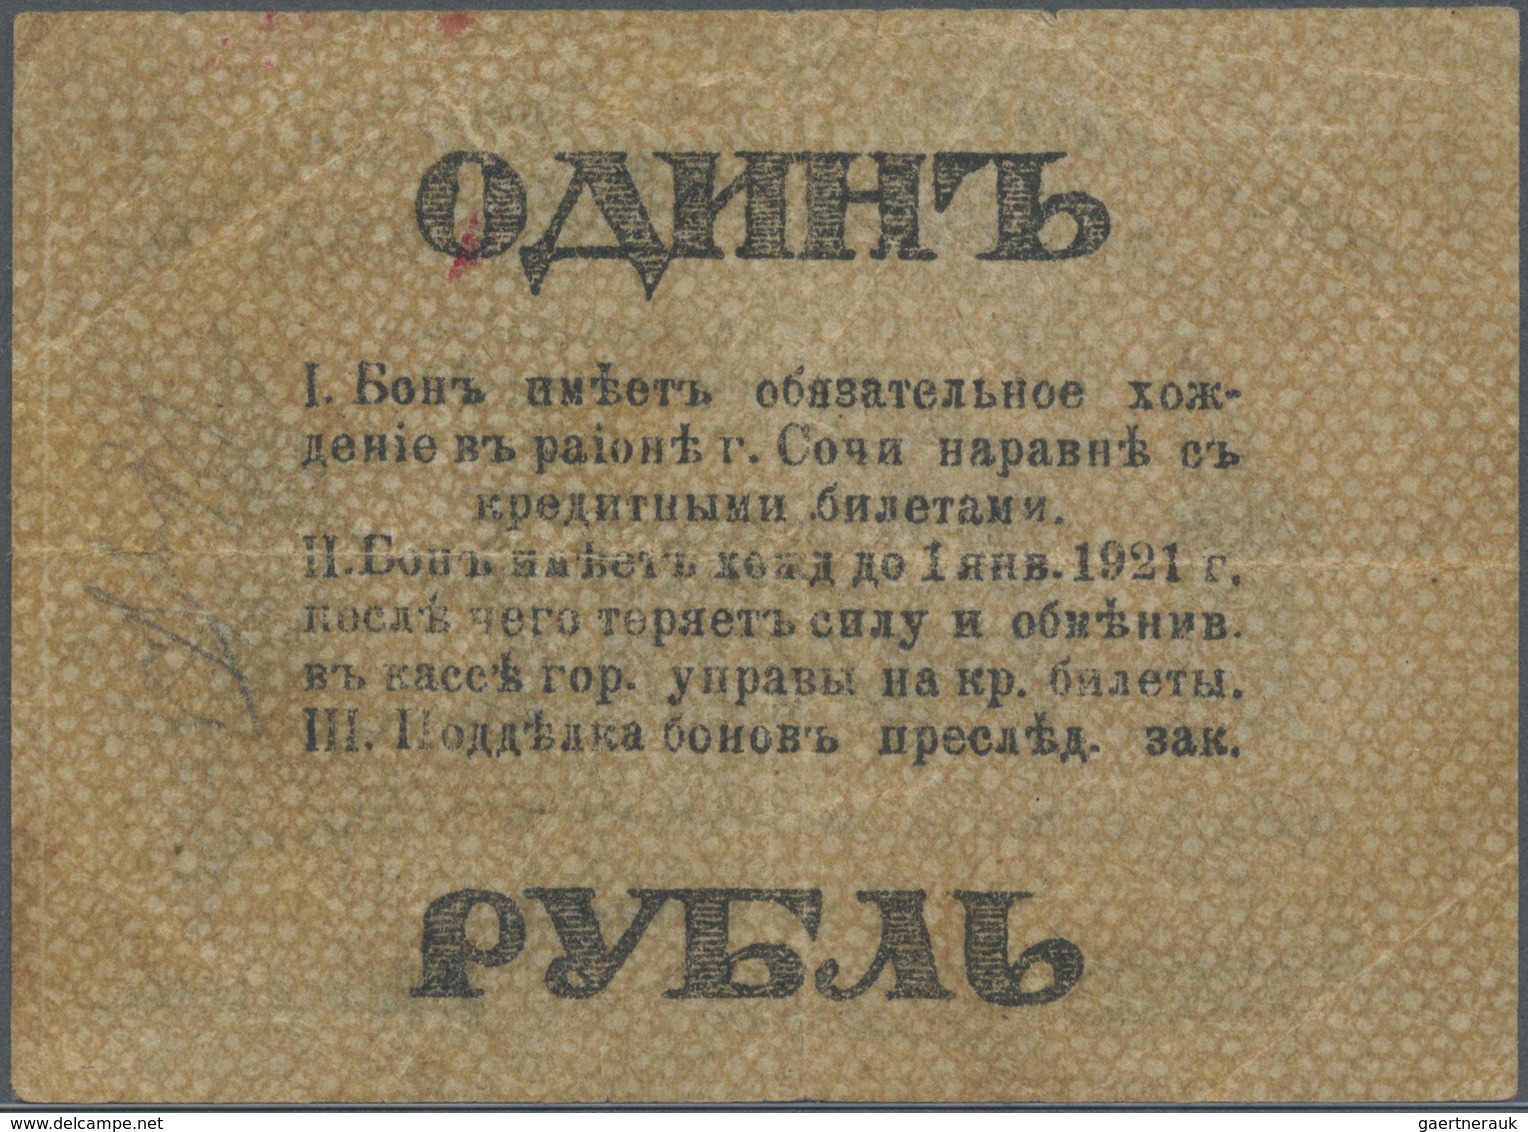 Russia / Russland: North Caucasus Sochi 1 Ruble 1918 R*6951 In Condition: F. - Russia